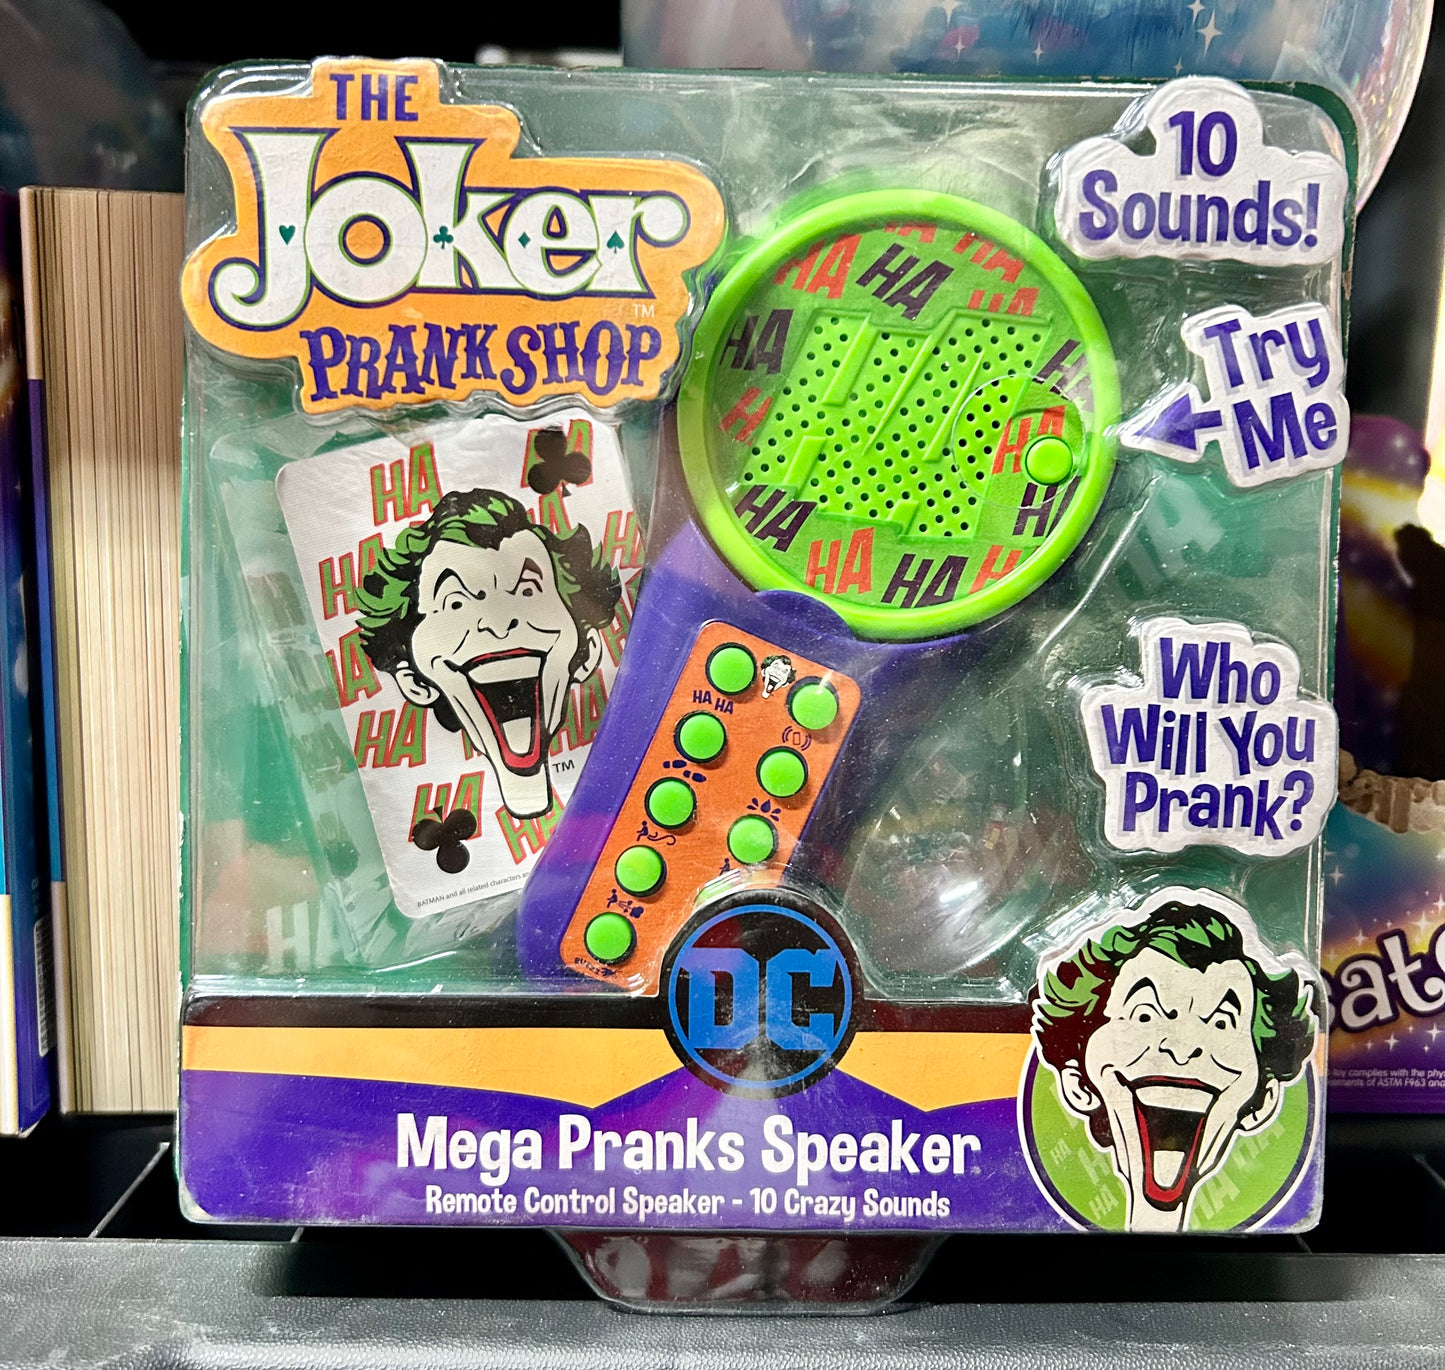 DC The Joker Prank Shop Mega Pranks Speaker